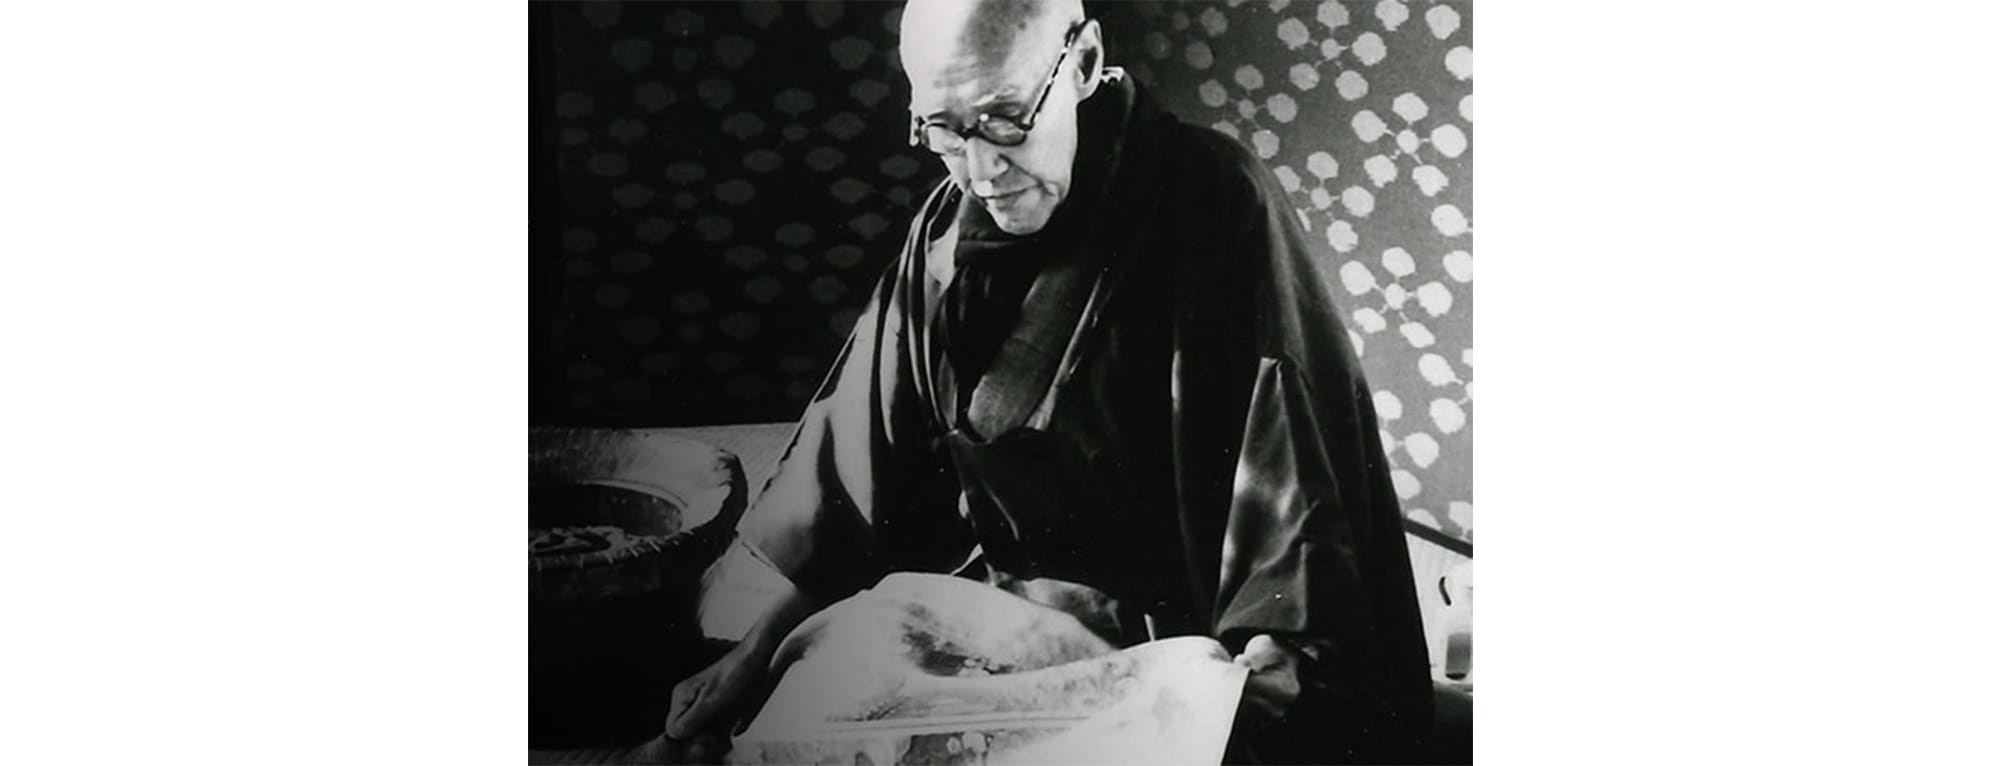 初代龍村平藏（1876〜1962）。1956年日本芸術院恩賜賞受賞。1958年紫綬褒章受章。